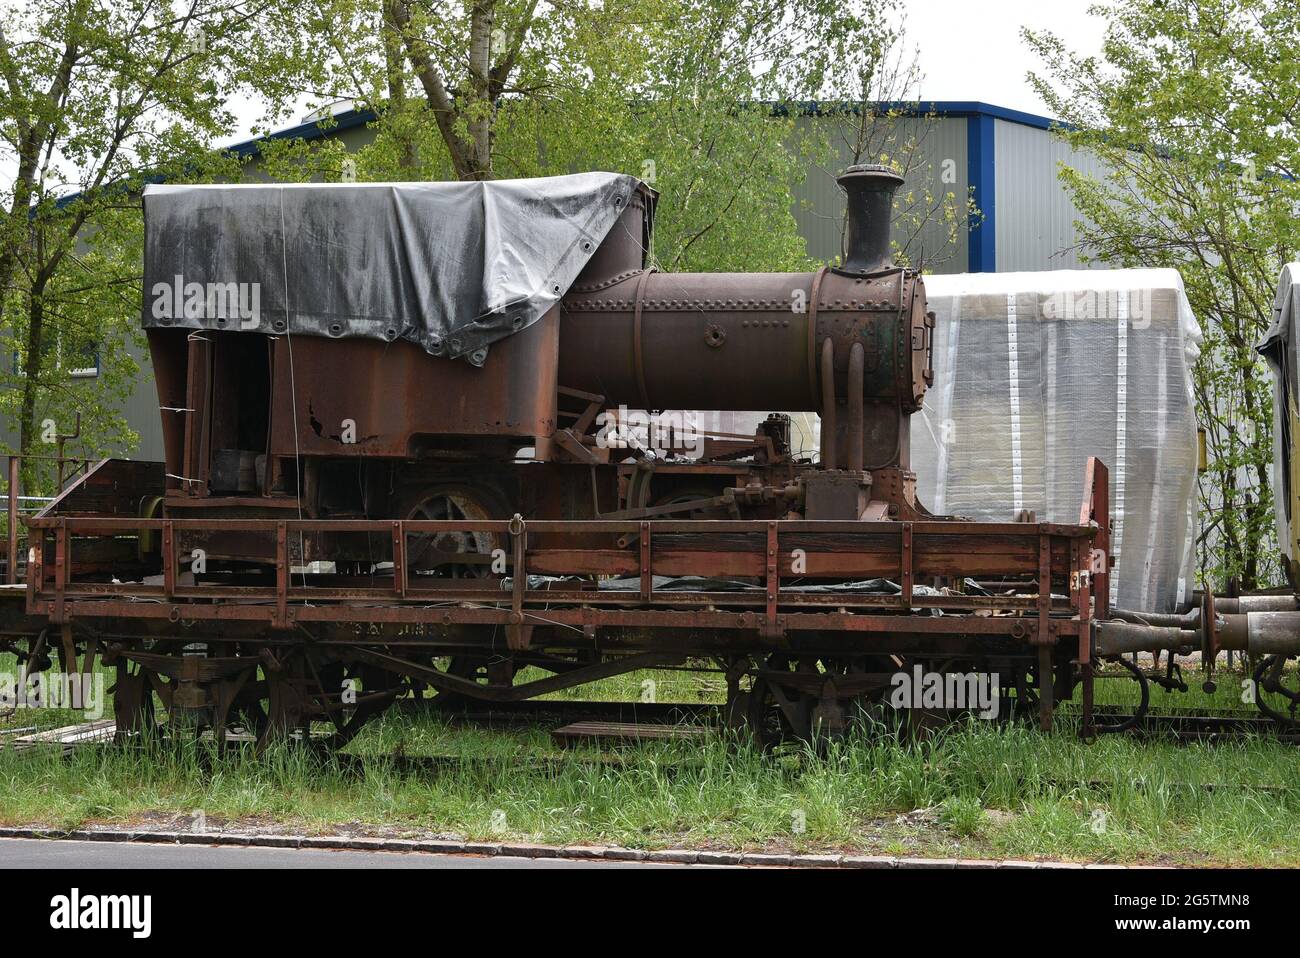 La locomotiva a vapore per il trasporto di merci arrugginite è stata caricata su un vecchio carro in piedi su binari ferroviari ciechi nella zona industriale abbandonata. Foto Stock